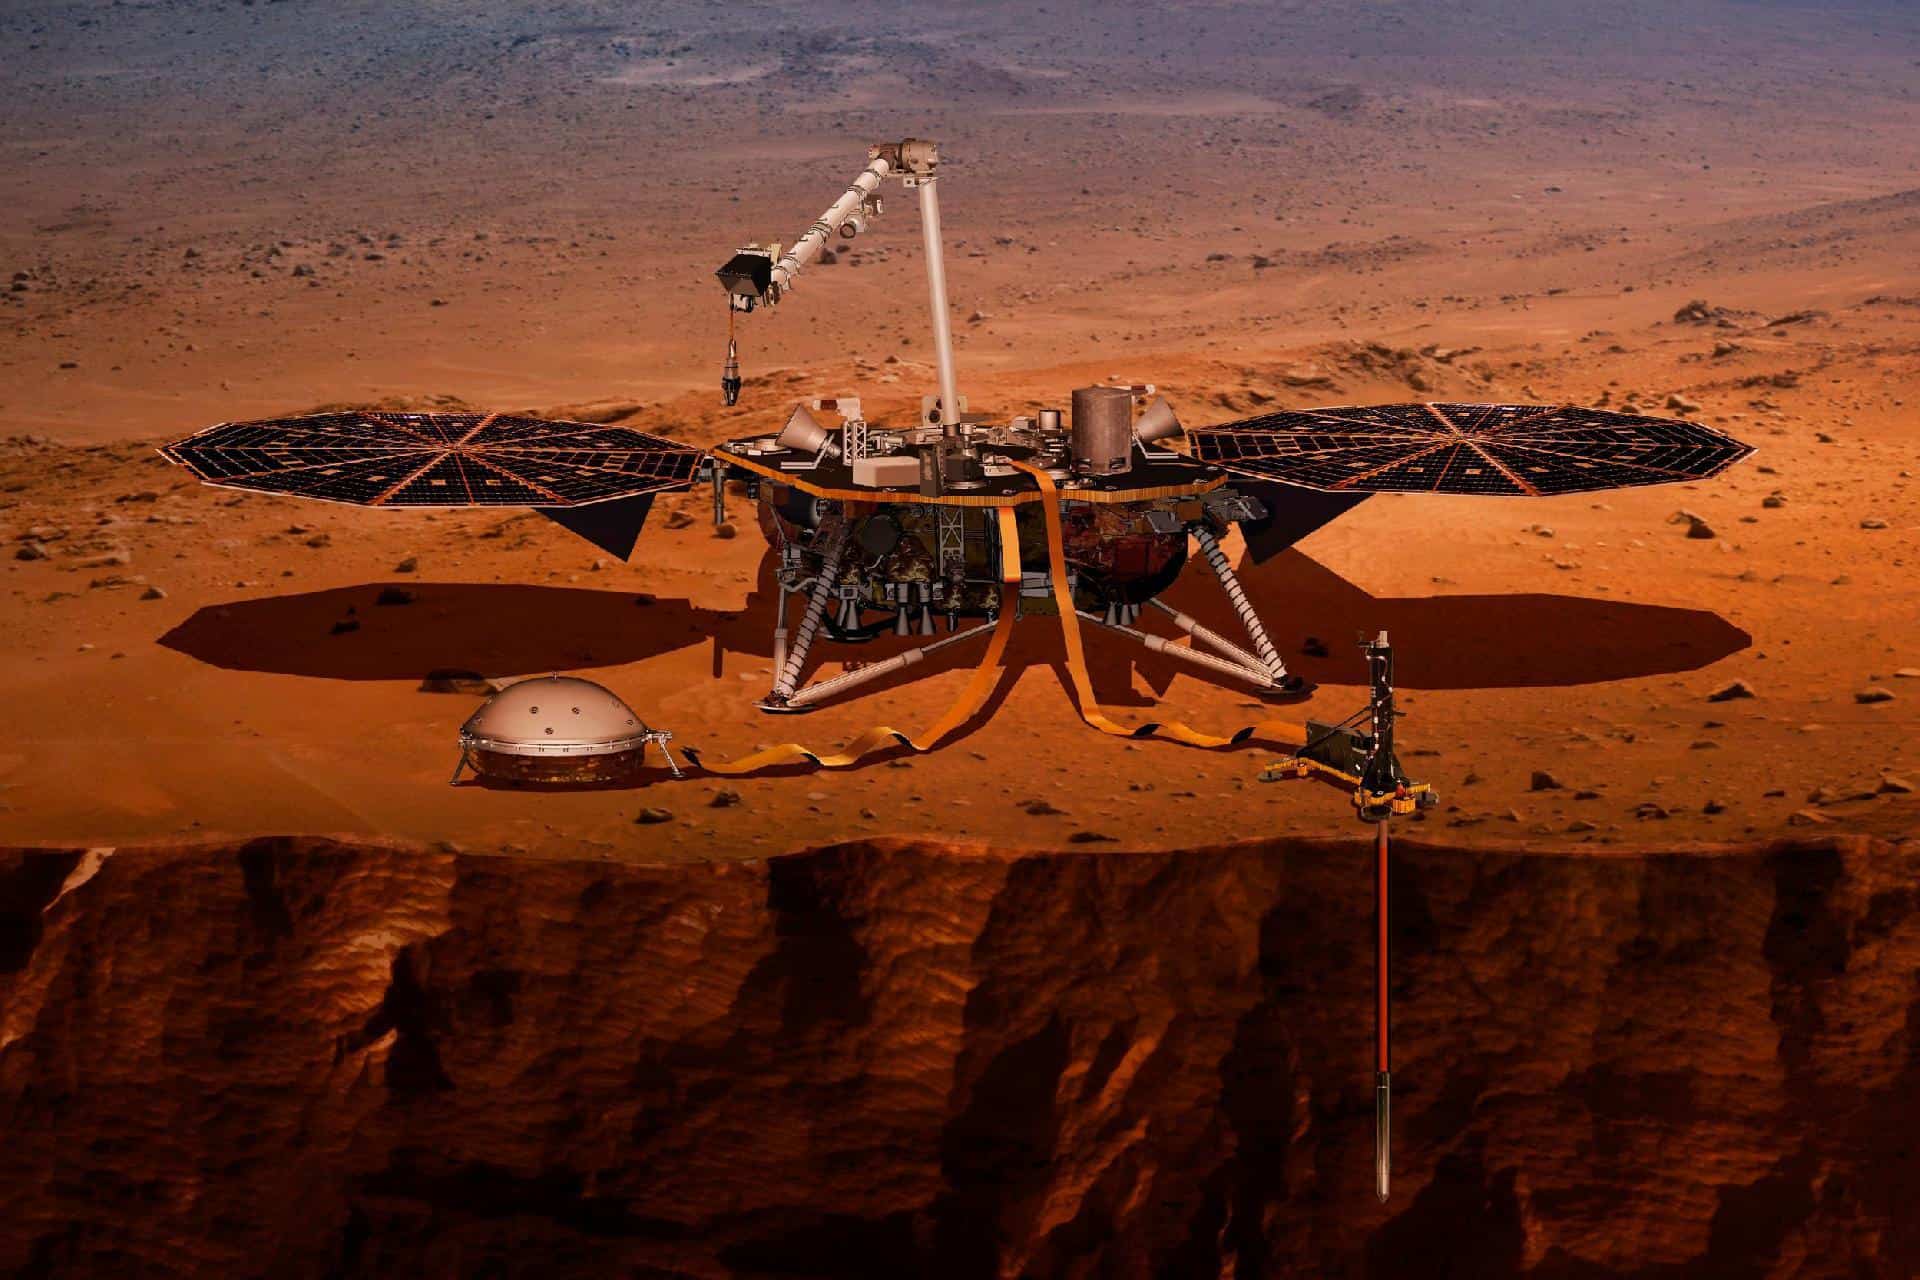 Пылевая буря на Марсе угрожала зонду InSight. Учёным пришлось принять важное решение